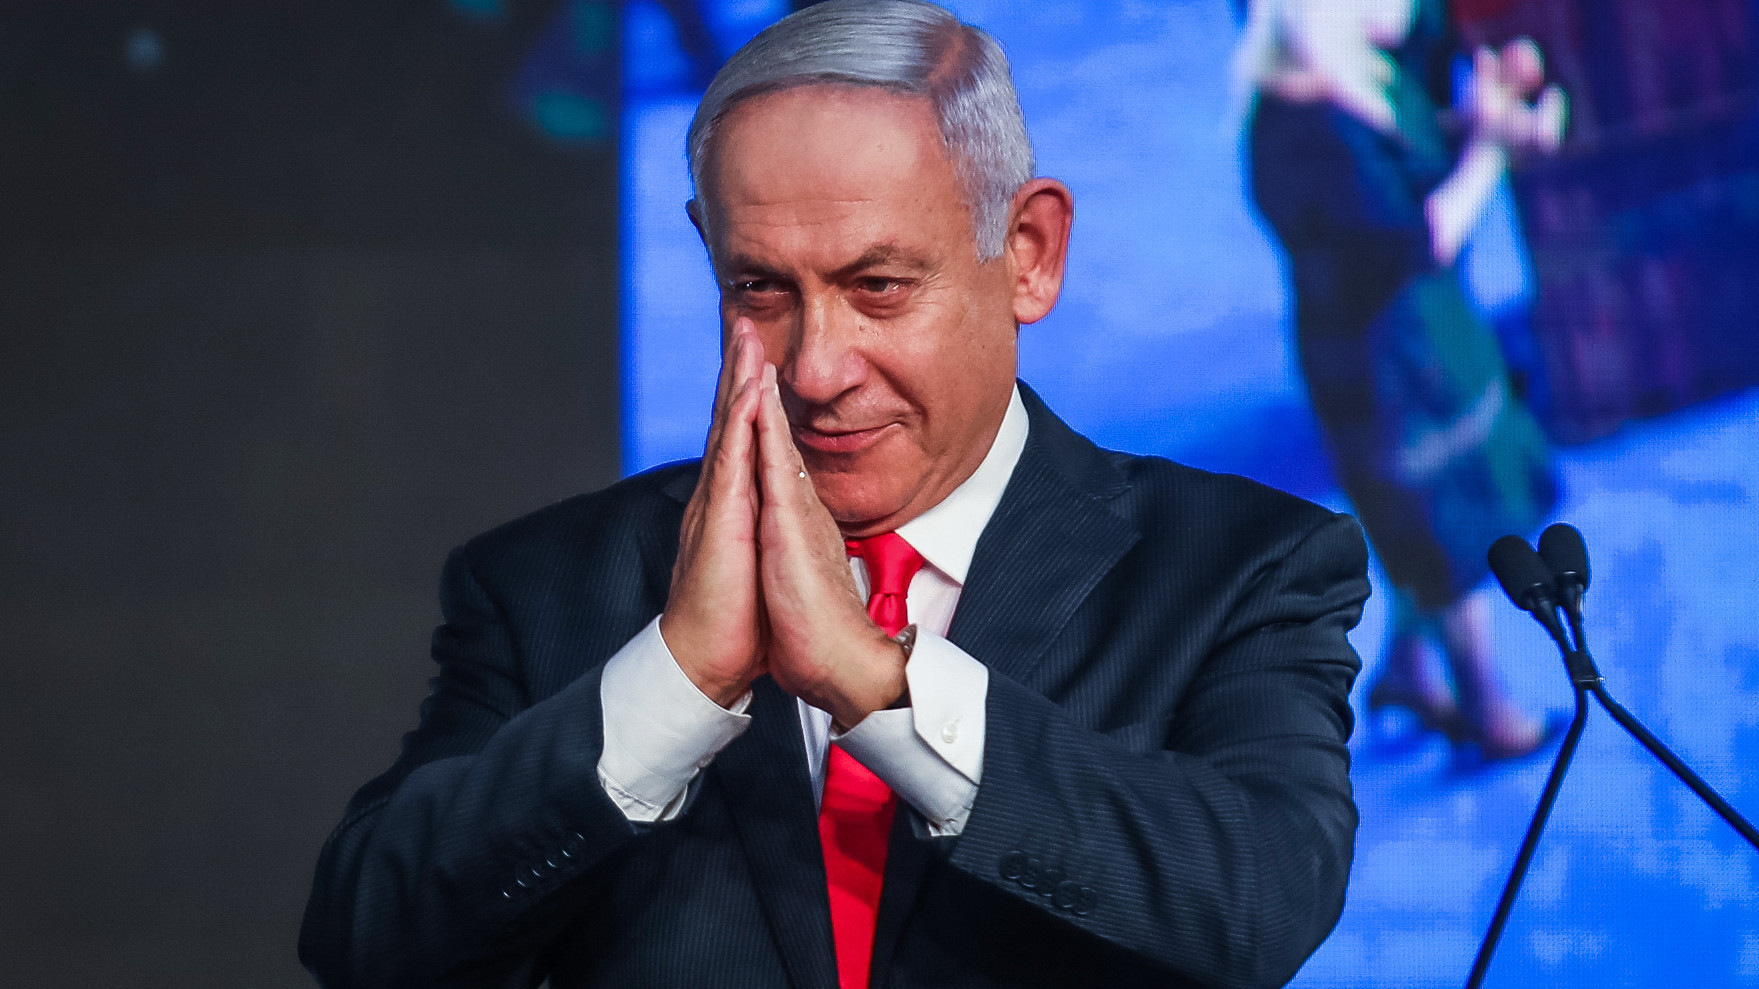 El bloque de Netanyahu obtendría la mayoría en Israel con el 80% de los votos escrutados